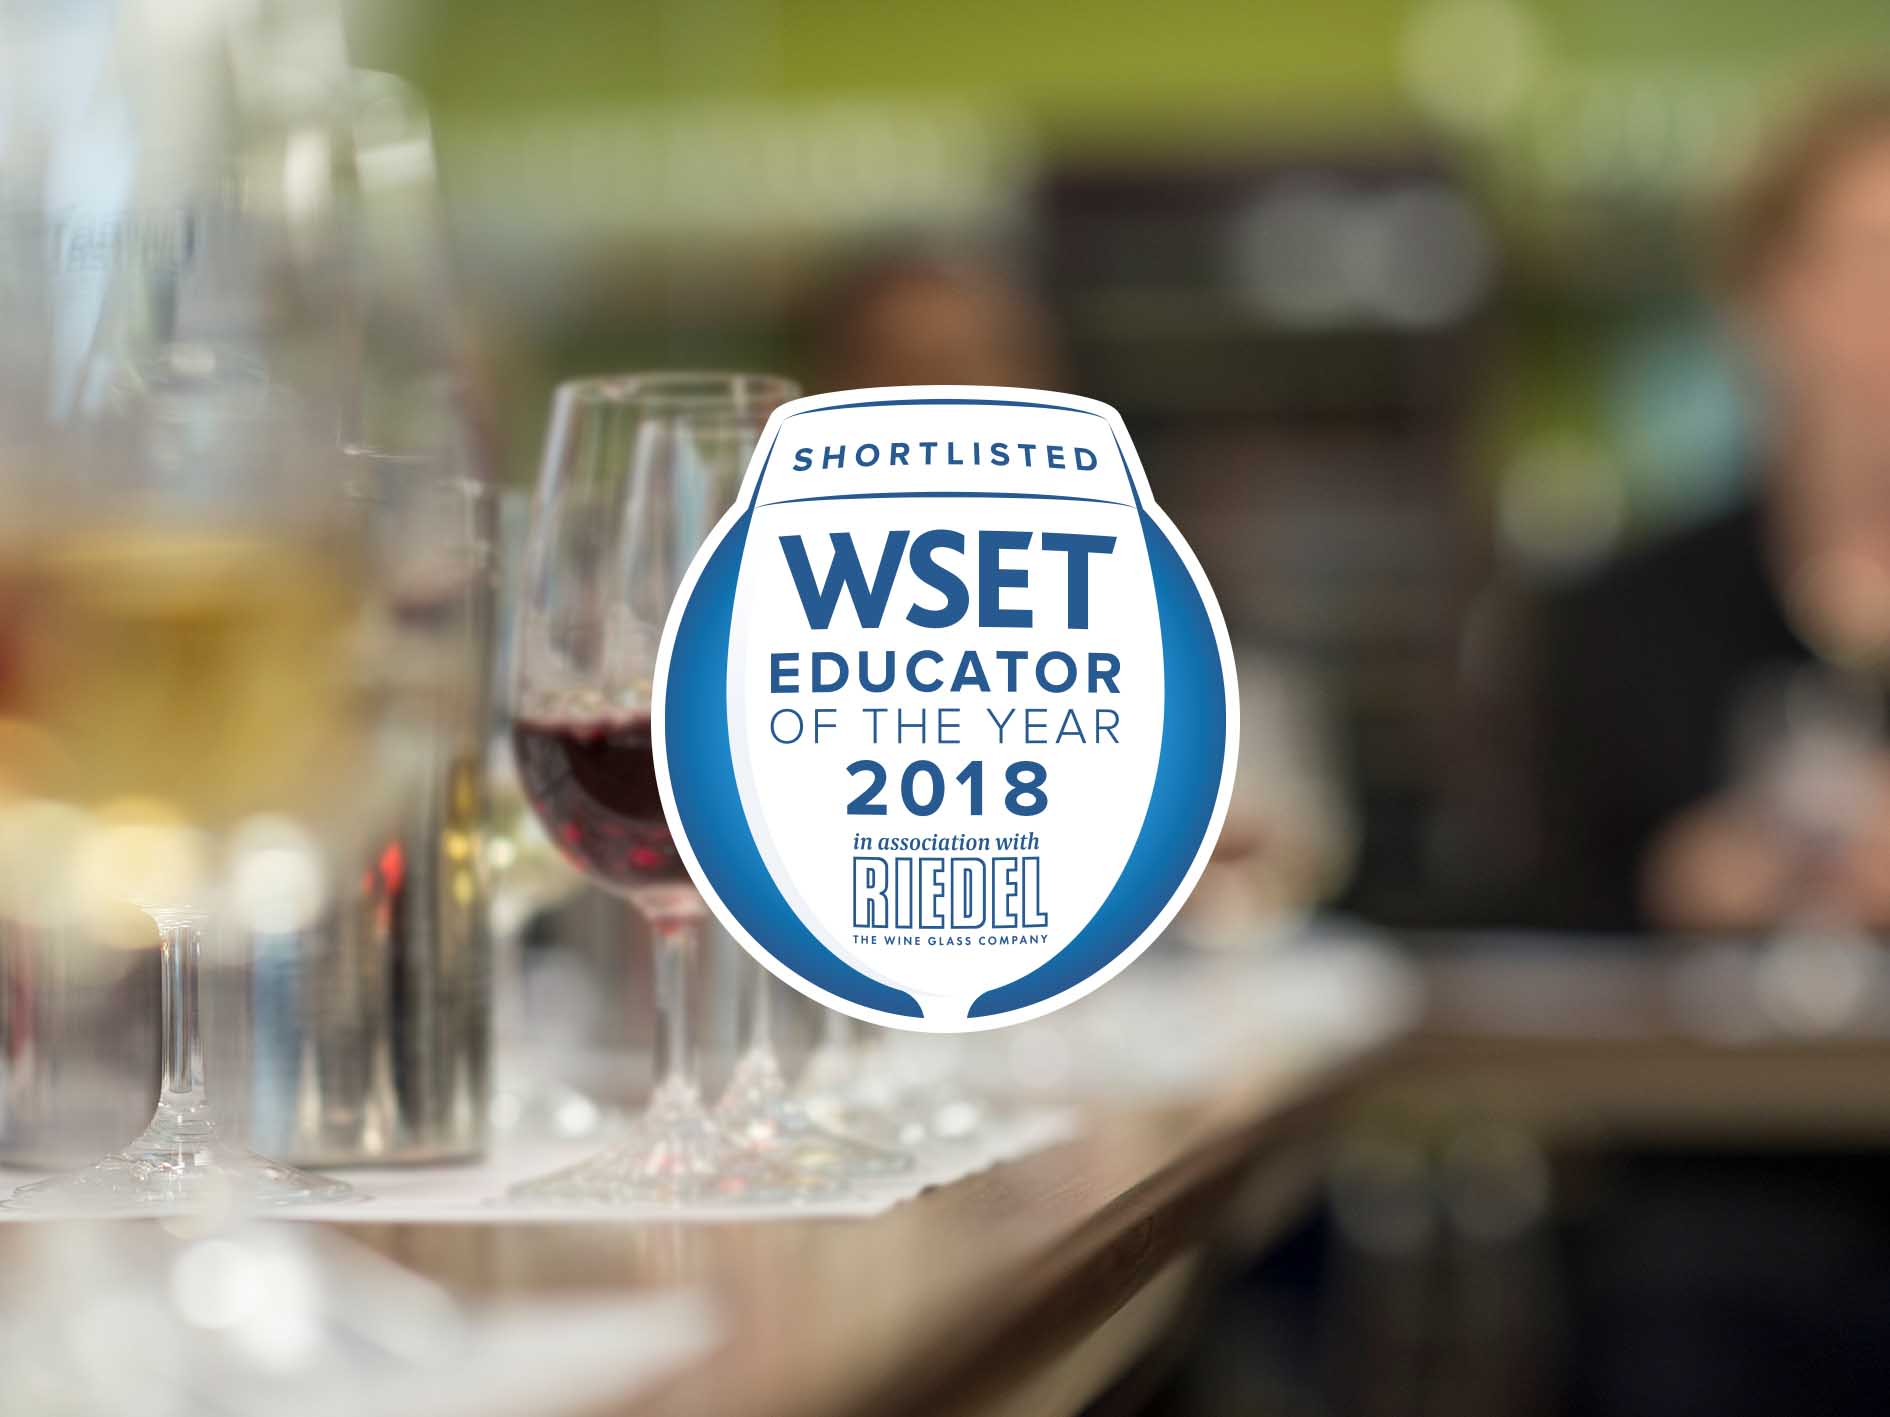 WSET Educator of the Year WSET Awards & Graduation